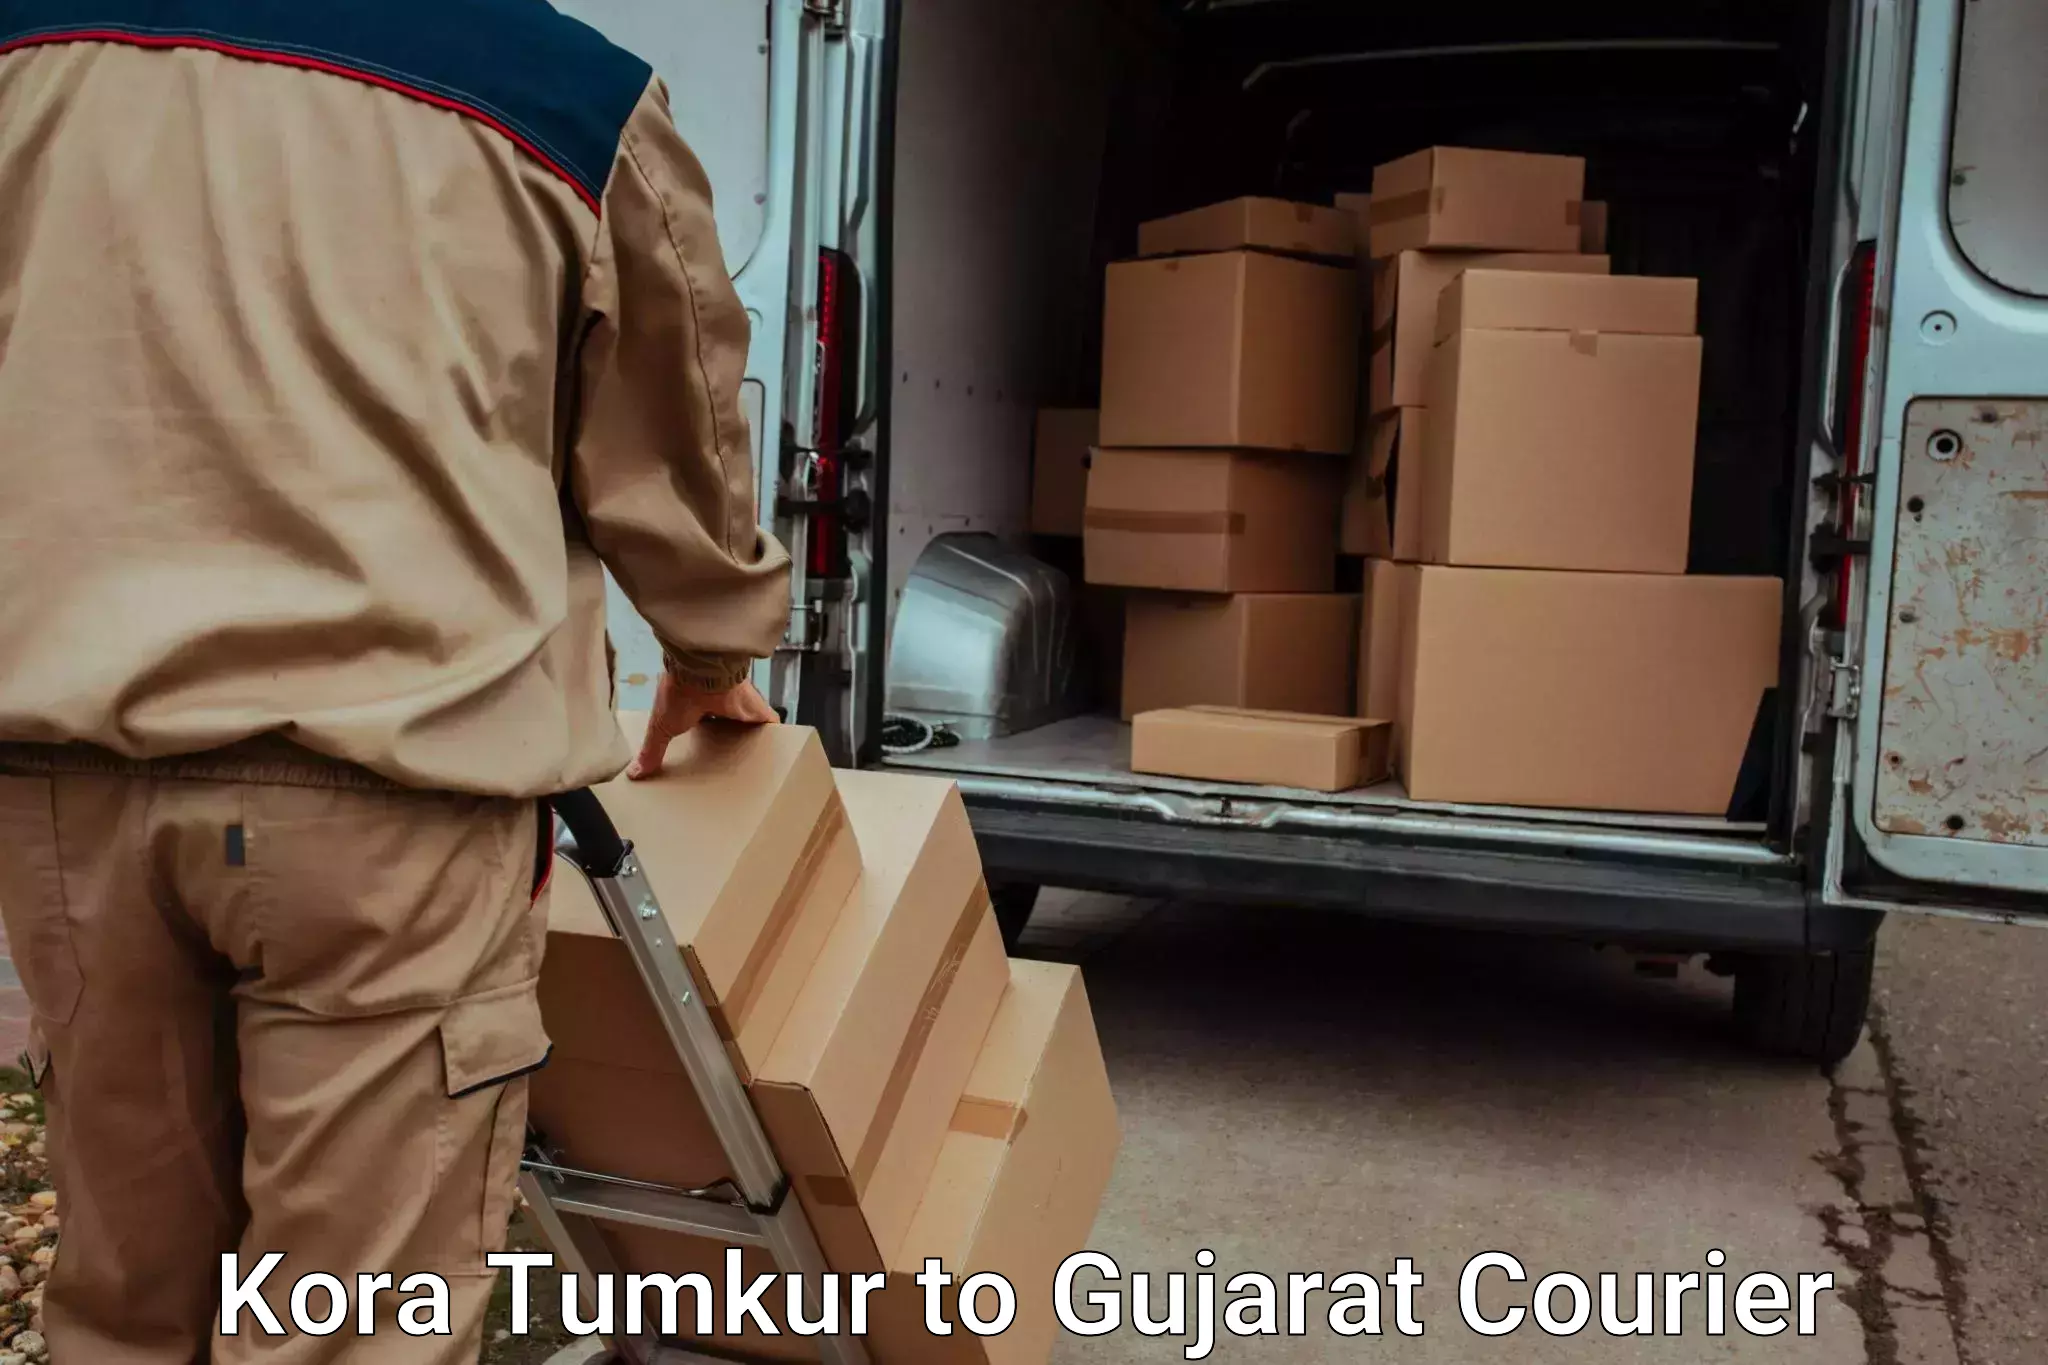 Furniture transport professionals Kora Tumkur to Katodara